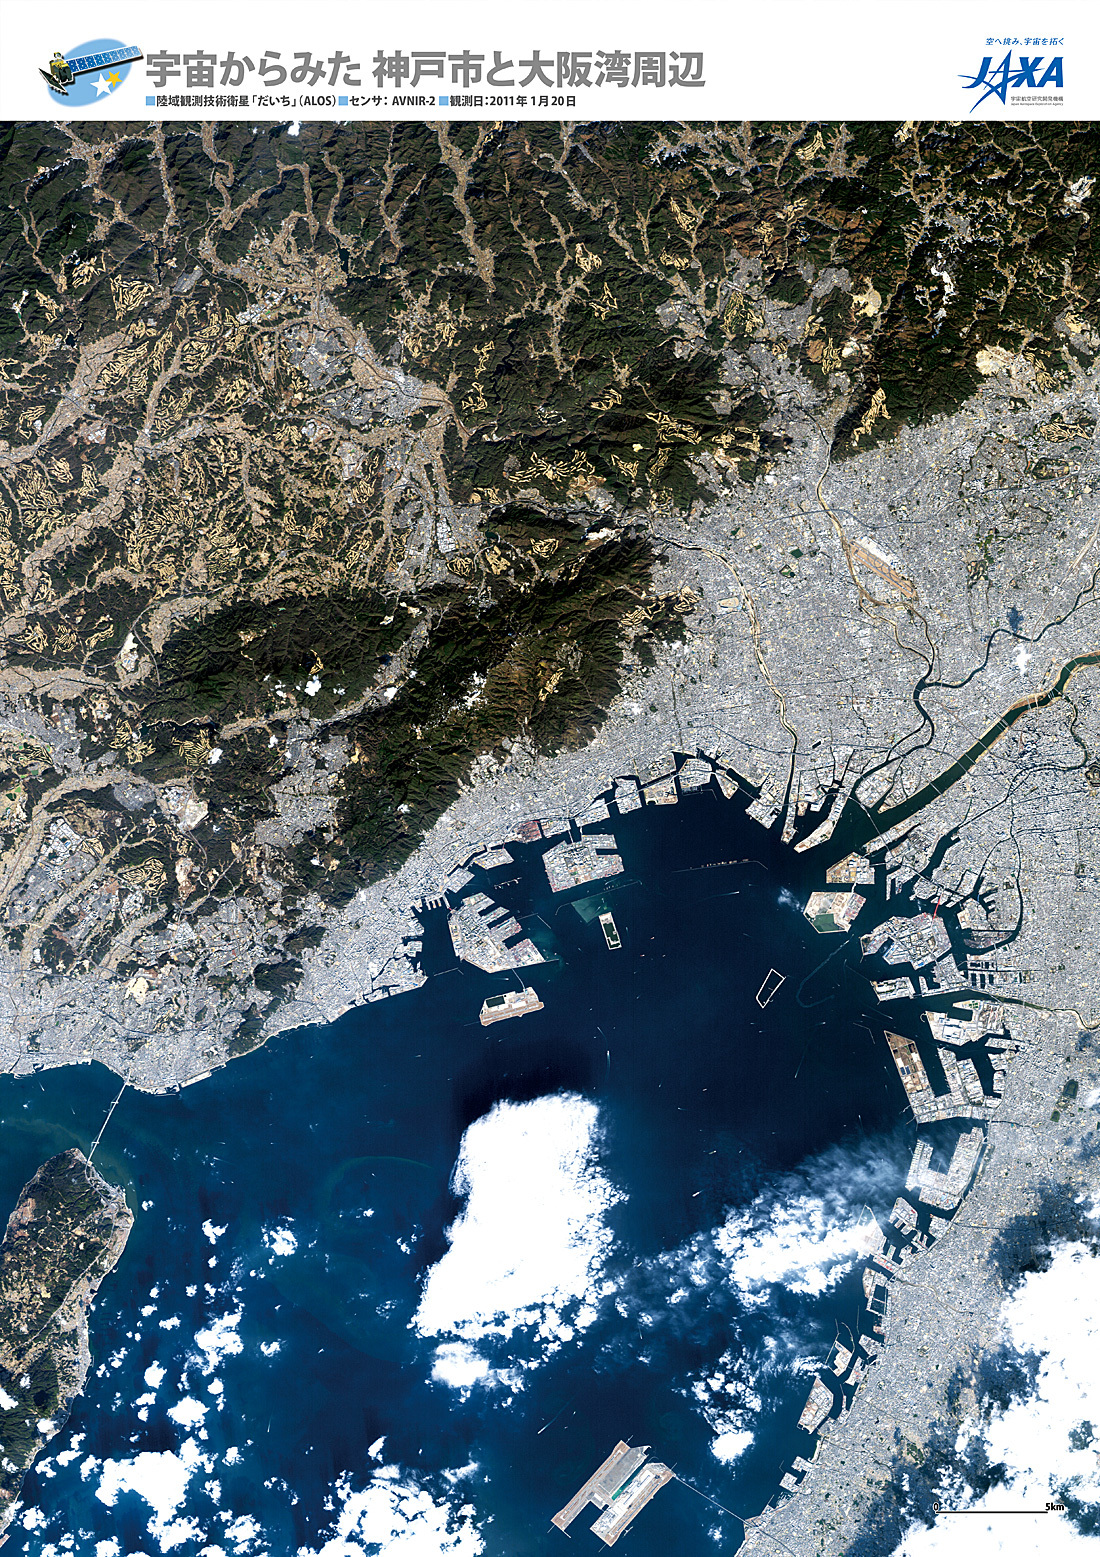 だいちから見た日本の都市 神戸市と大阪湾周辺:衛星画像（ポスター仕上げ）